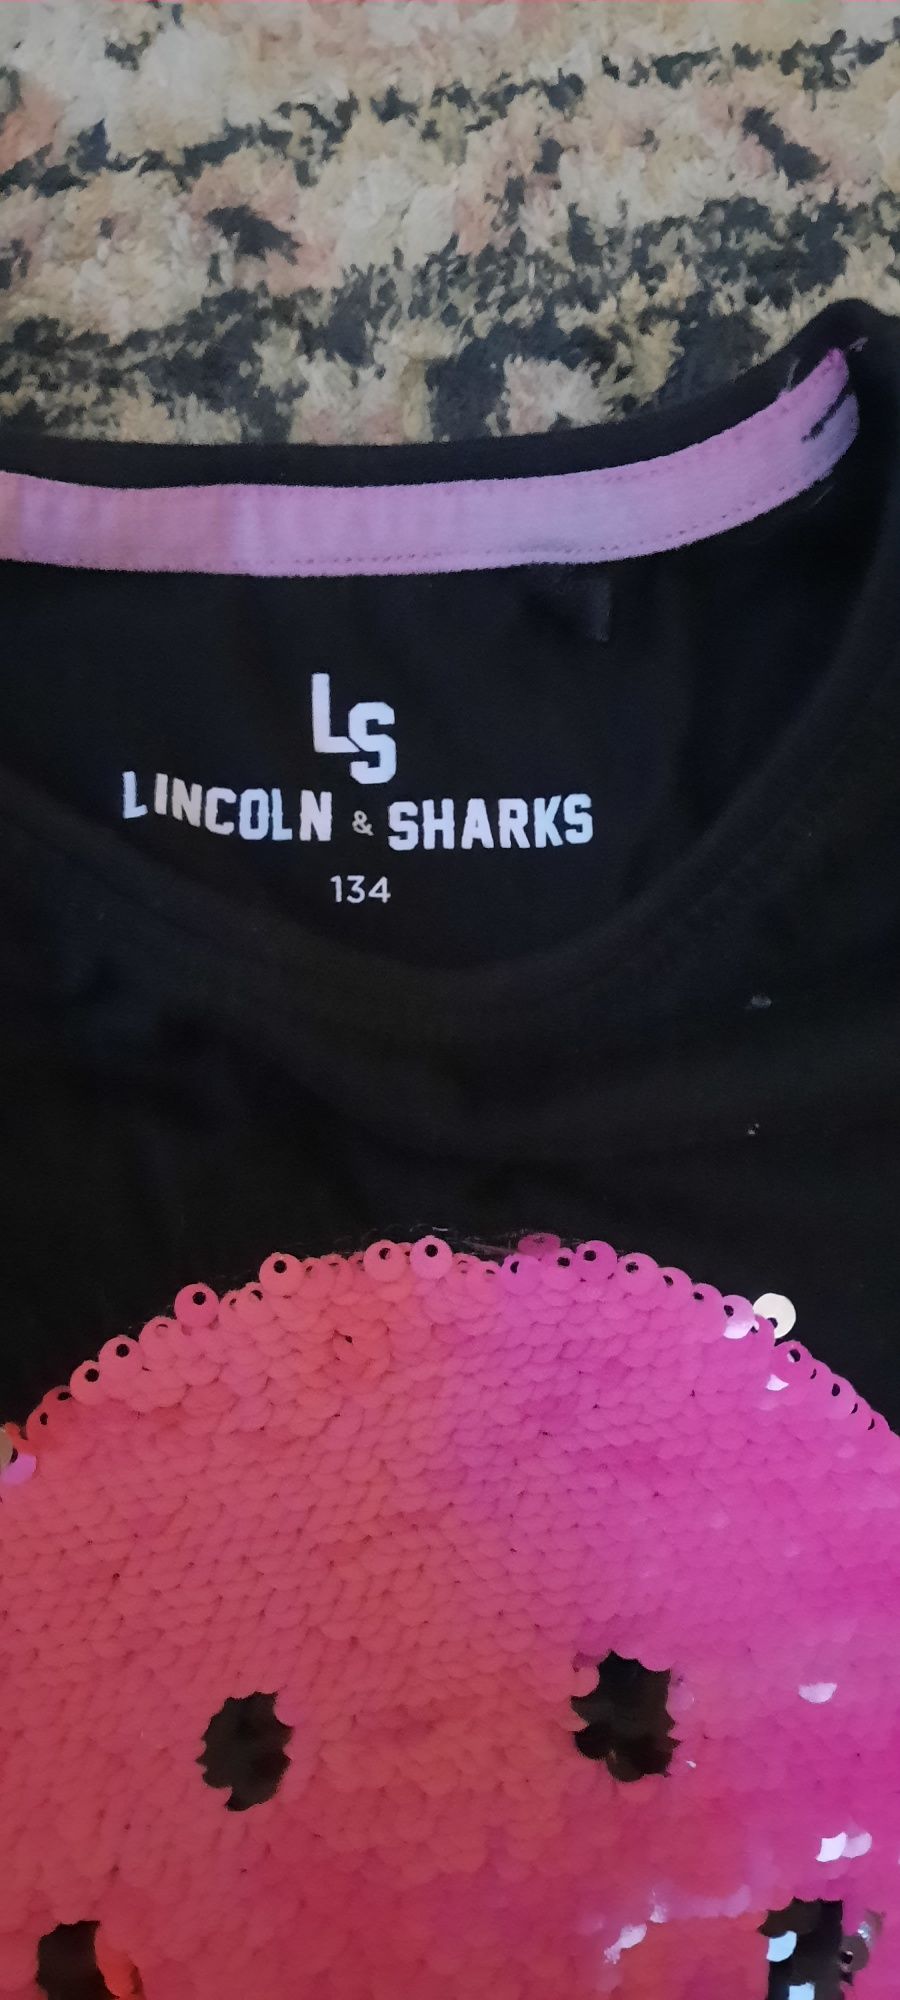 Bluzka dla dziewczynki 134 Lincoln and Sharks, długi rękaw